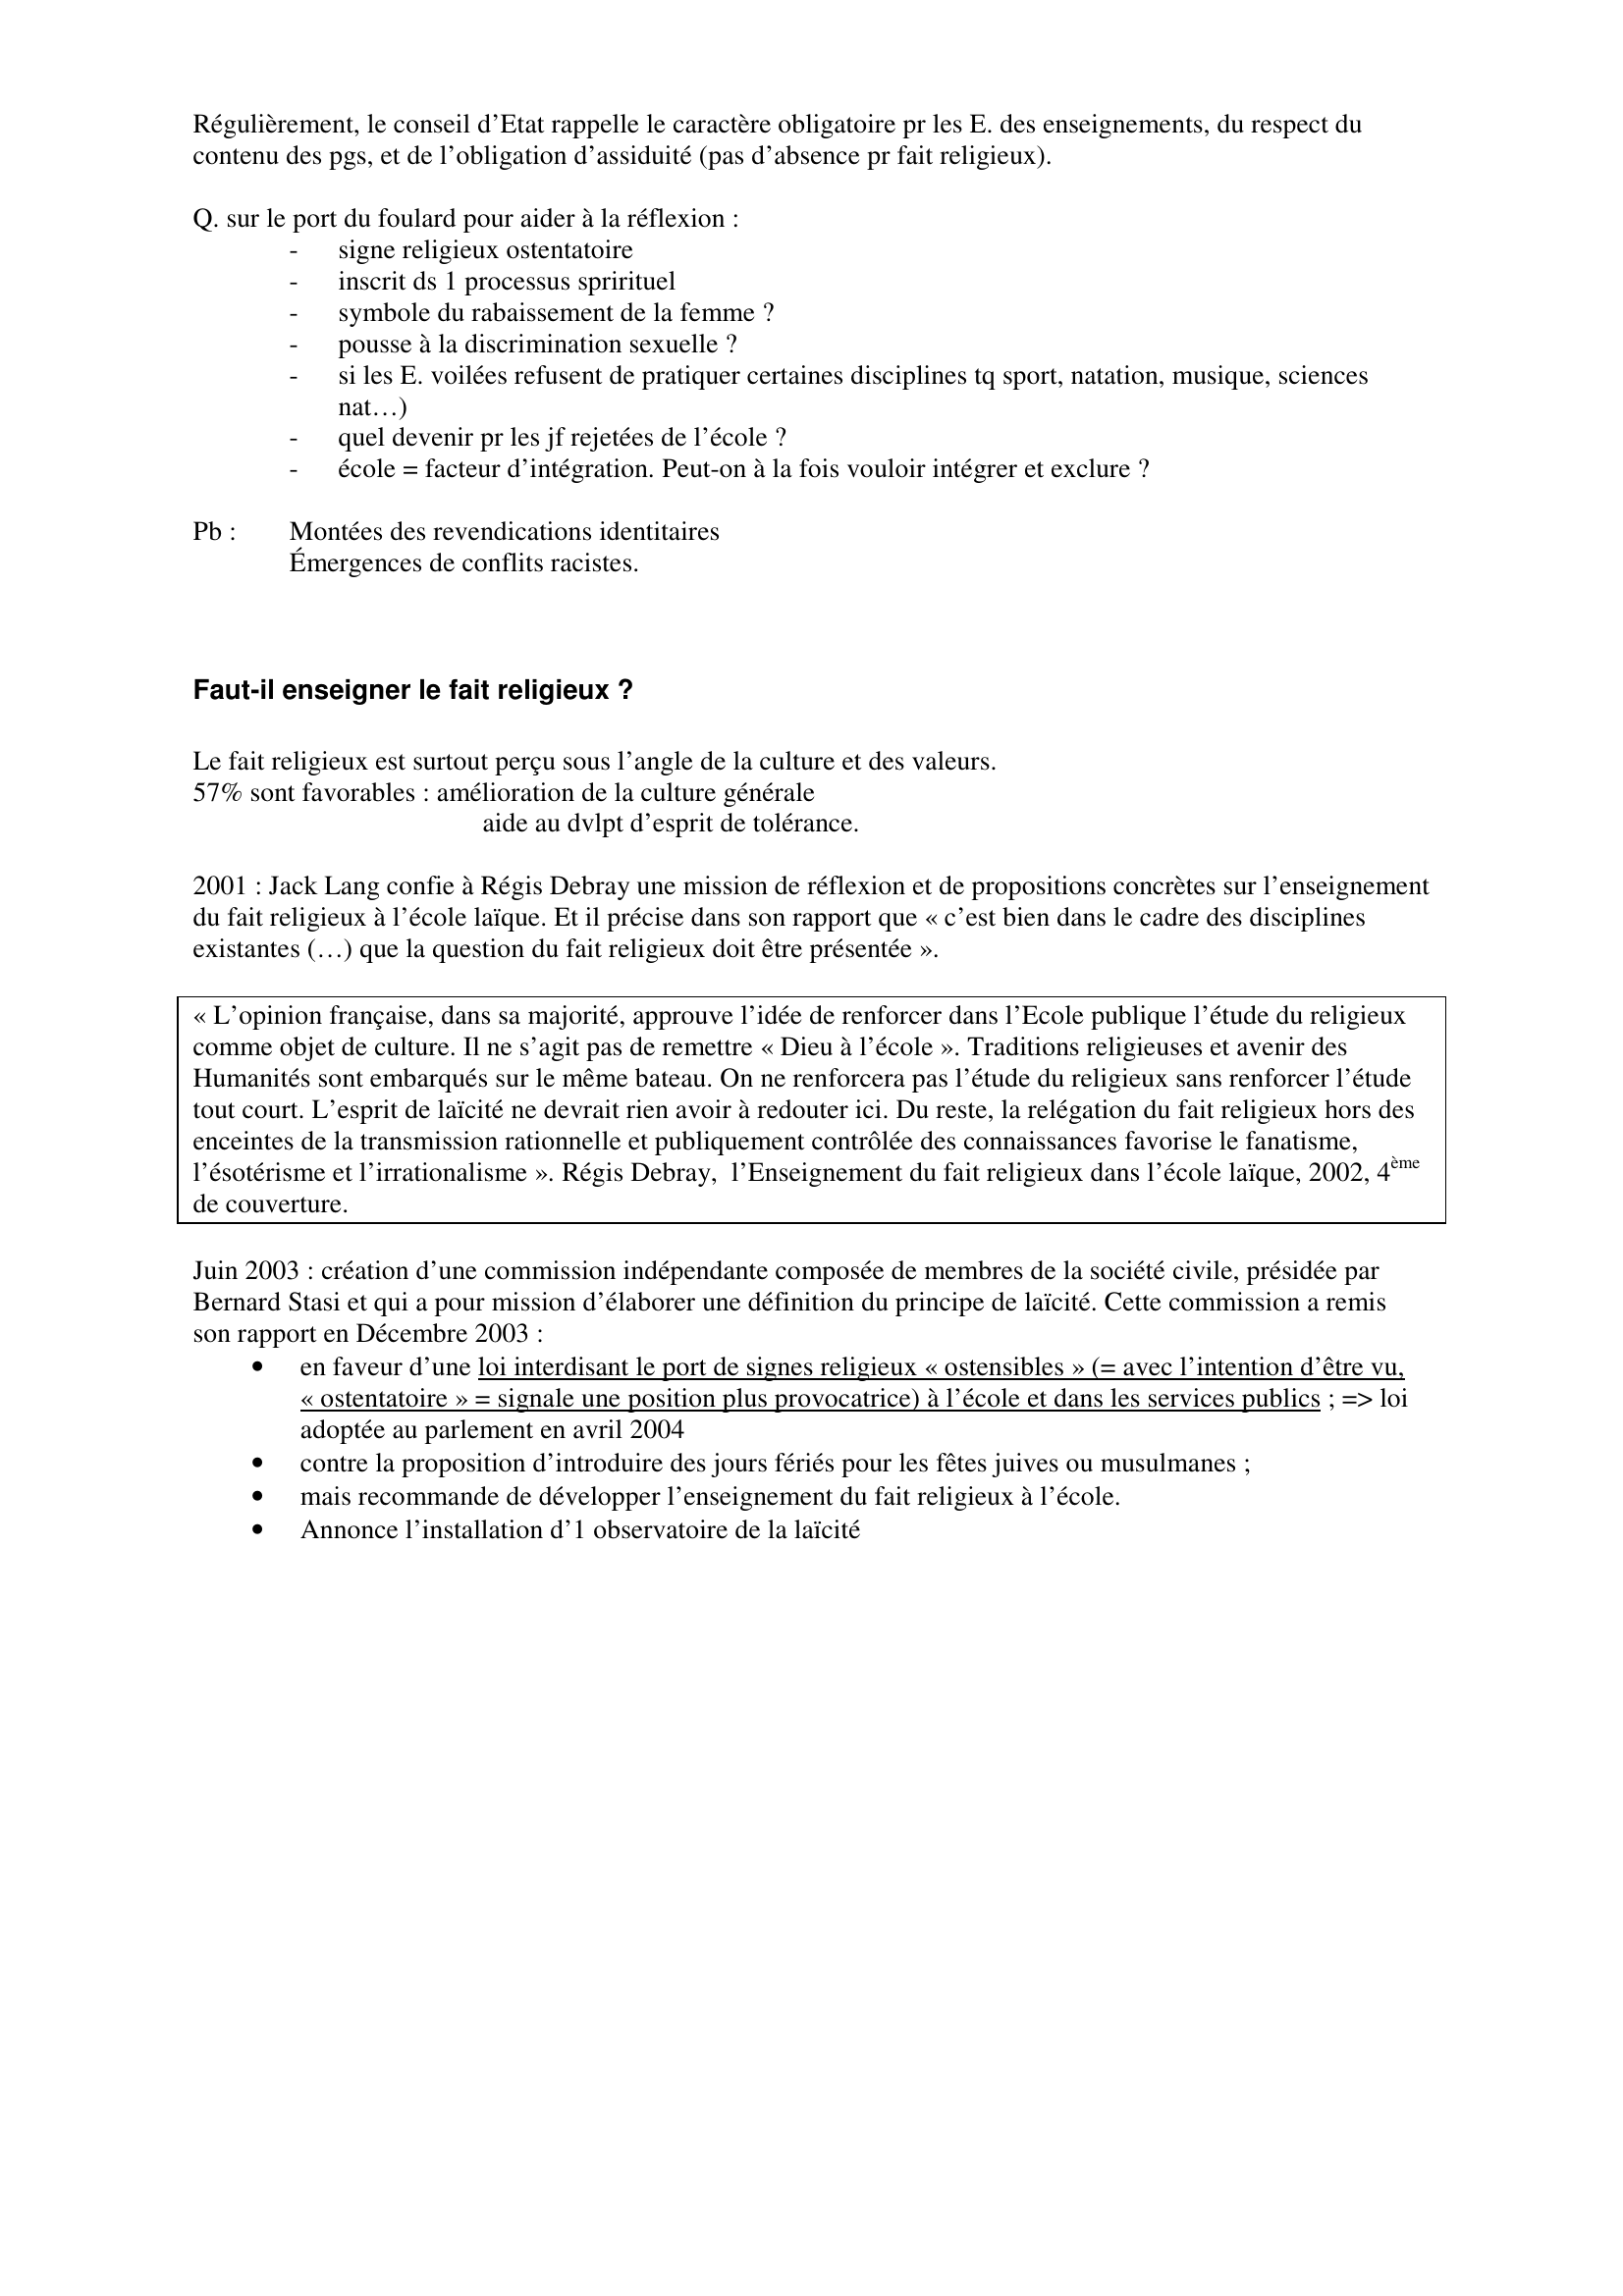 Prévisualisation du document LA LAICITE

Fiche synthèse construite par Sylvain
sylvain.